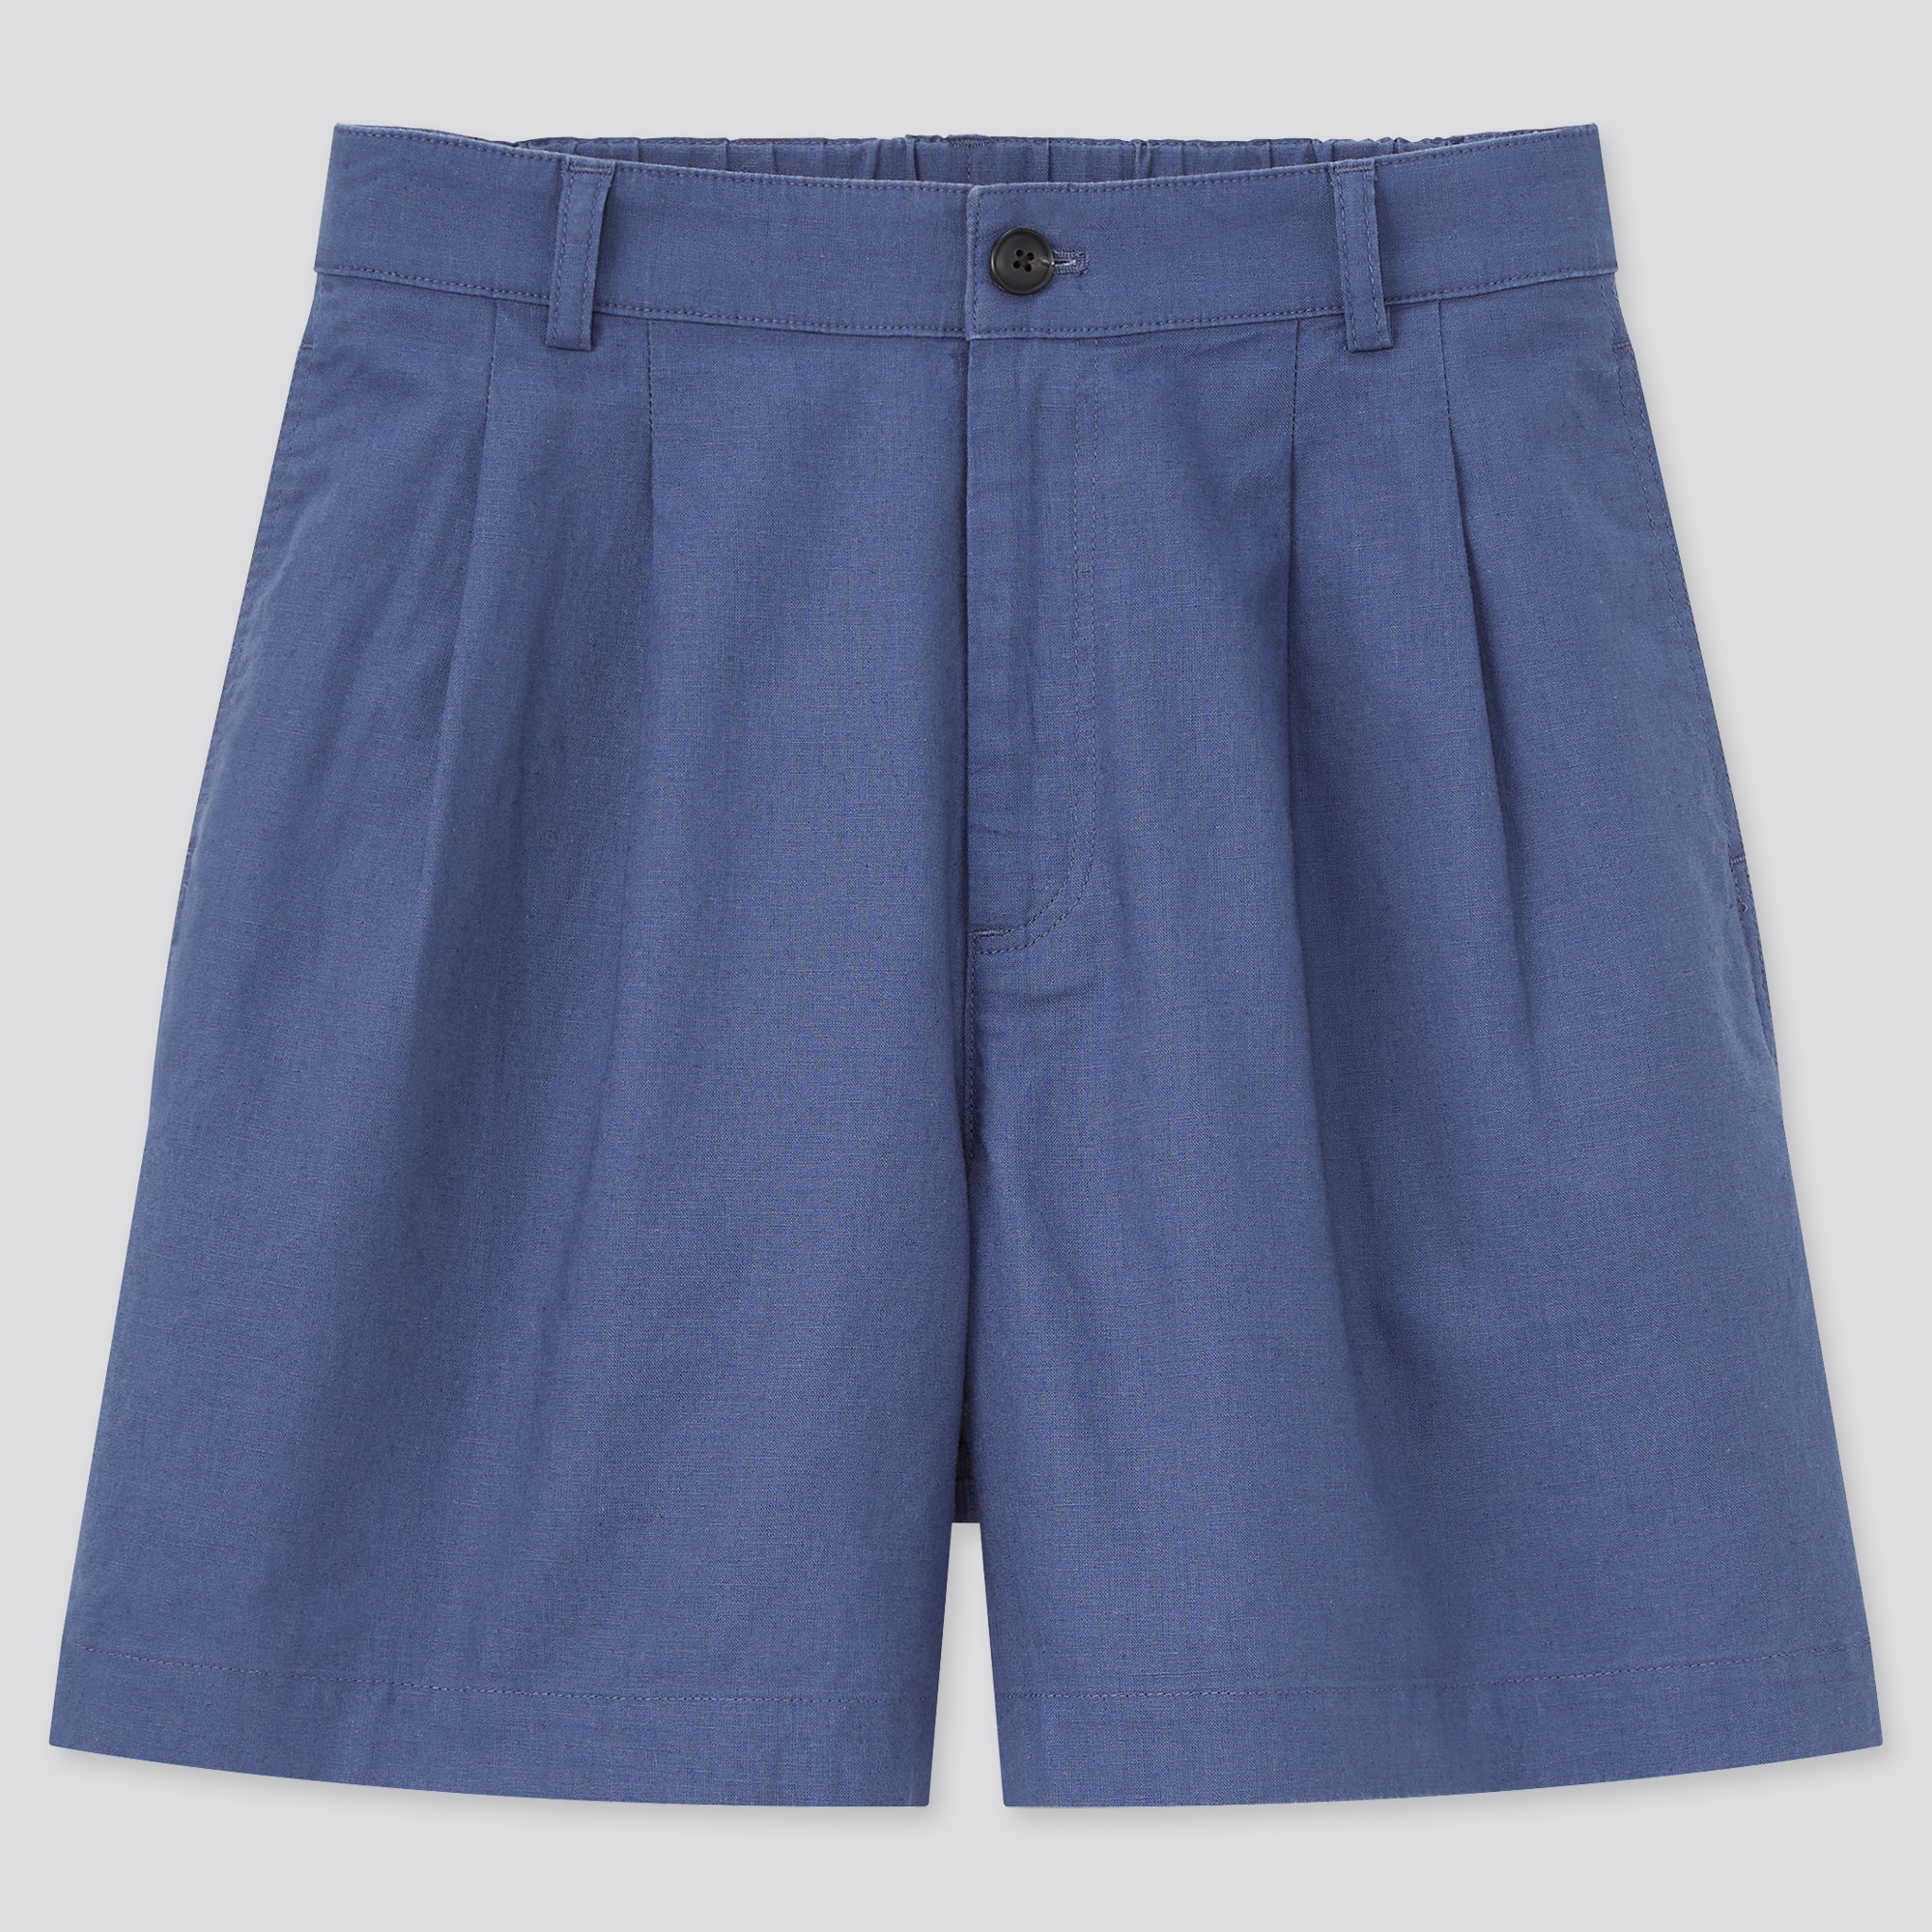 Femme Vêtements Shorts Shorts longs et longueur genou Bermuda Tan en coton et lin Lin JOSEPH en coloris Bleu 